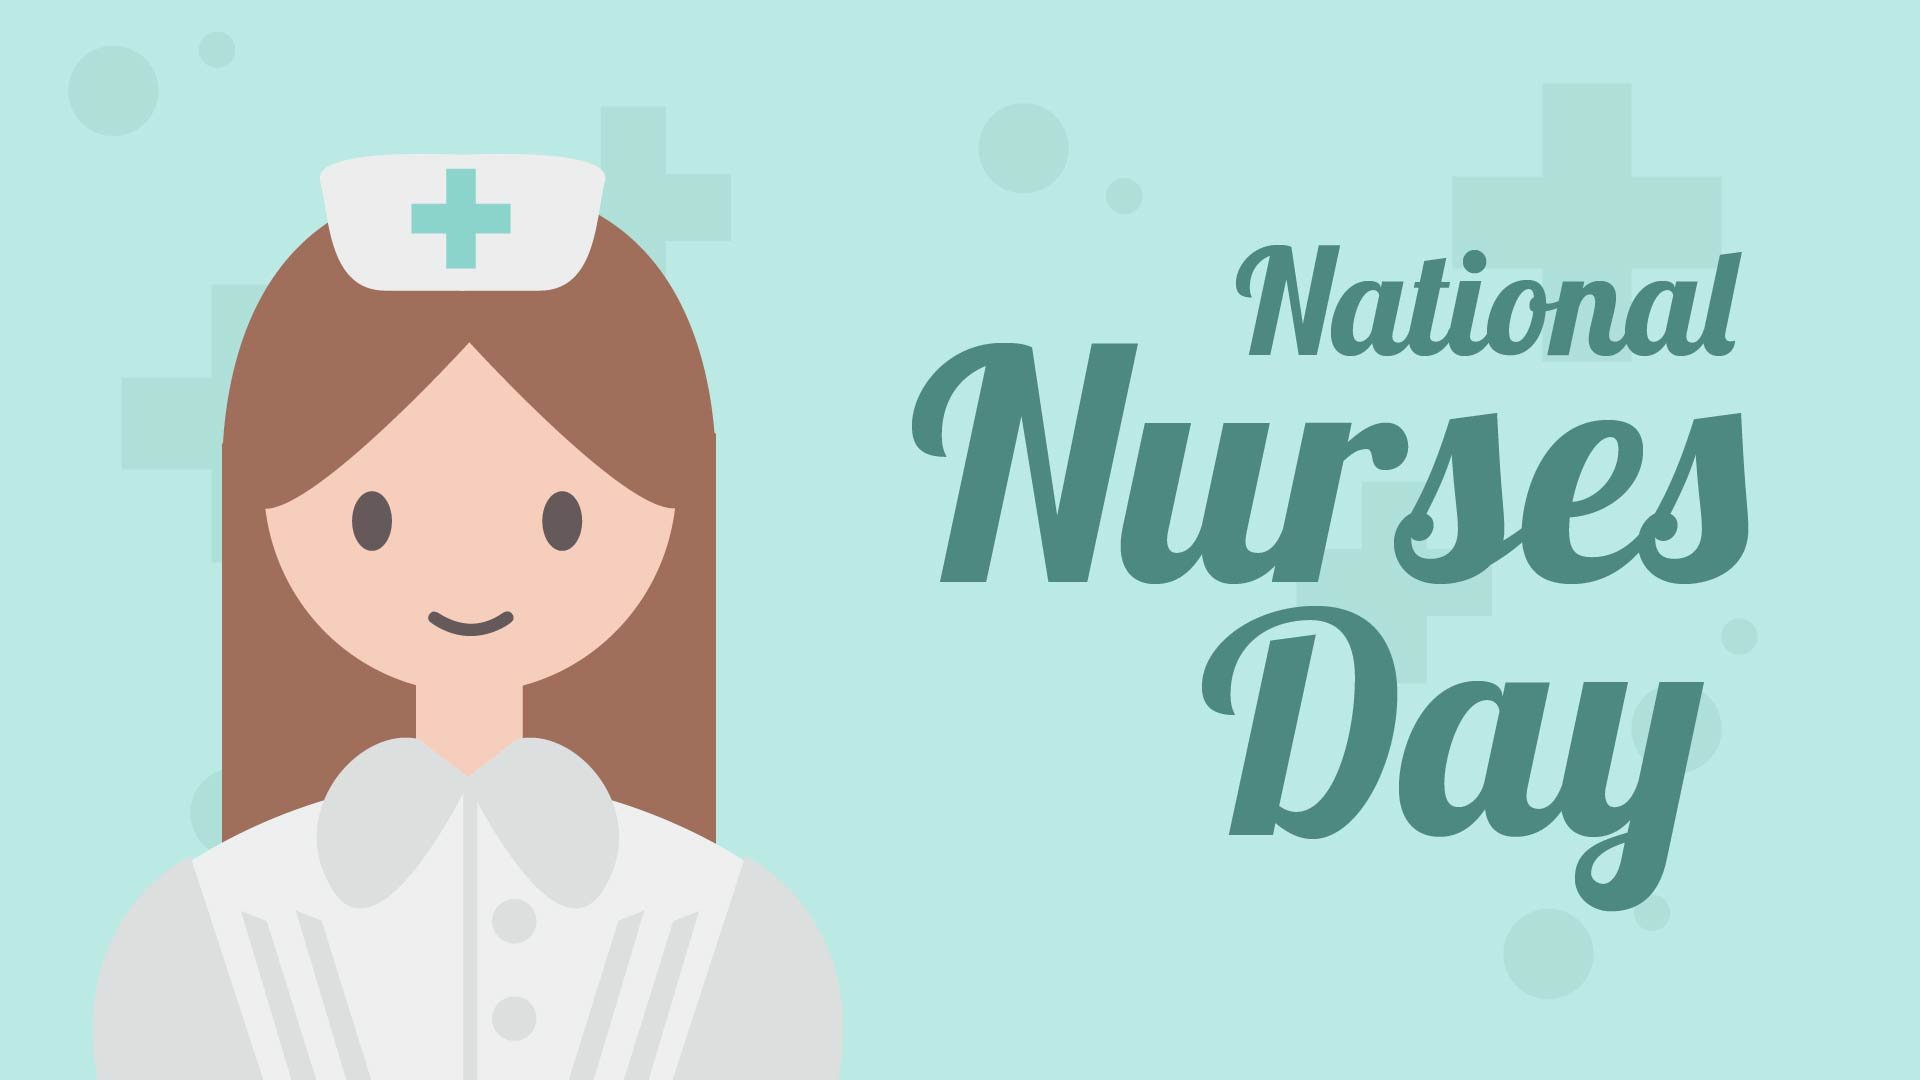 Free National Nurses Day Banner Background in PDF, Illustrator, PSD, EPS, SVG, JPG, PNG